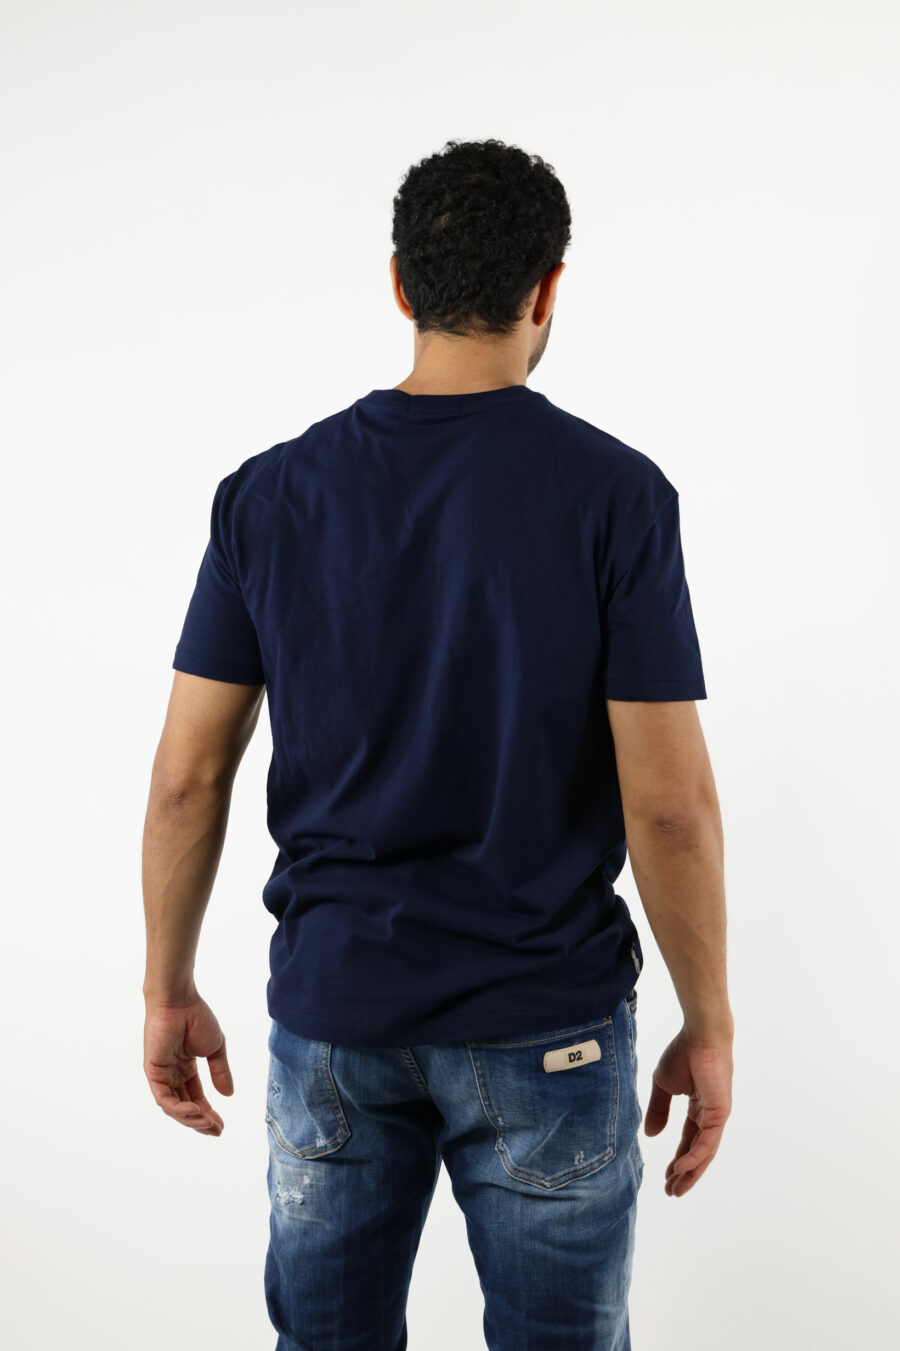 Dark blue T-shirt with white "polo" maxilogo - 111237